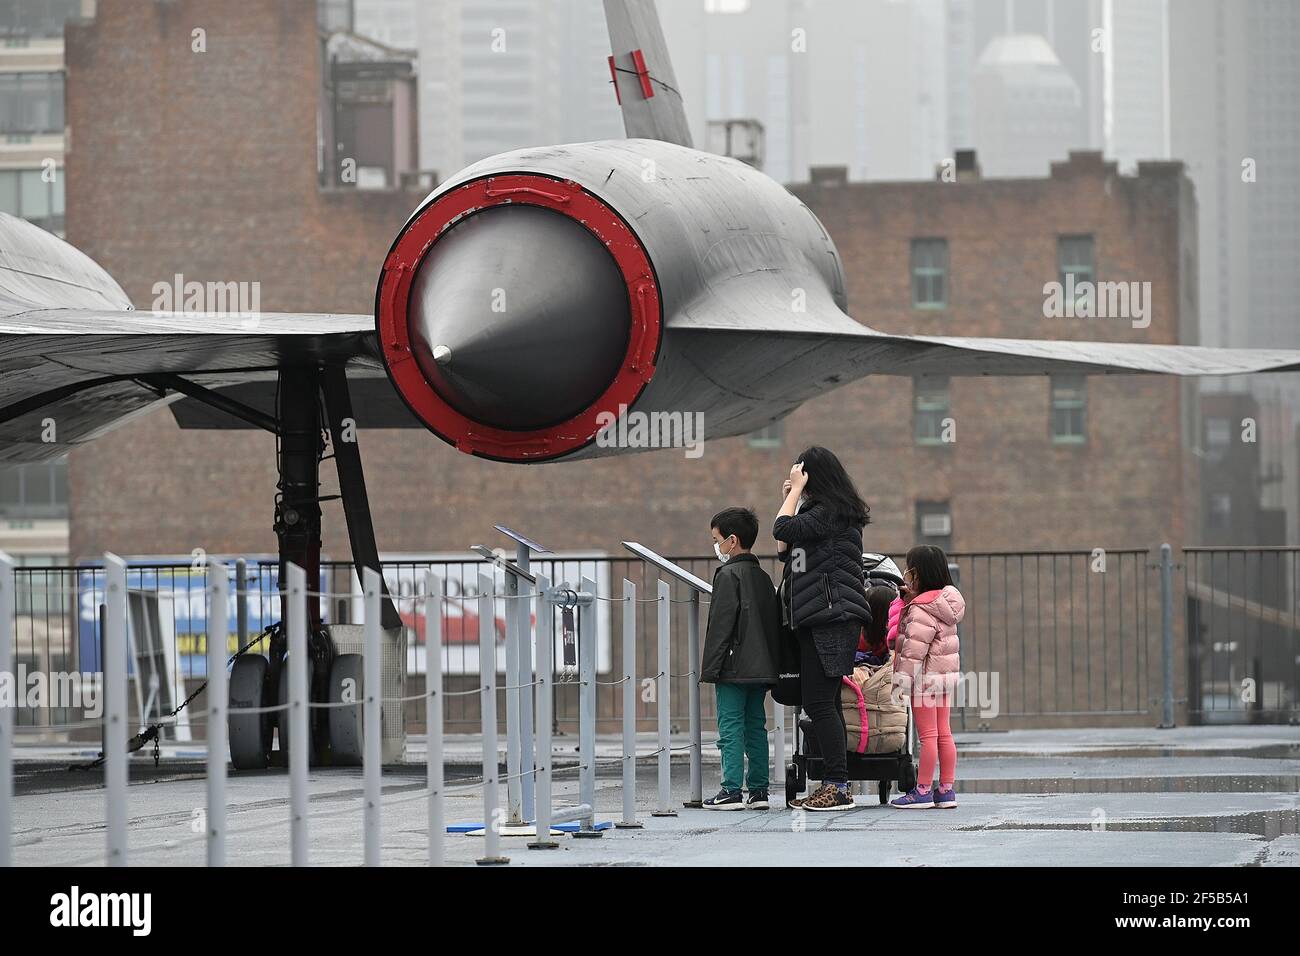 New York, USA. März 2021, 25th. Besucher sehen sich ein Lockheed A-12 CIA-Aufklärungsflugzeug an, das auf dem Flugdeck des Intrepid Sea, Air & Space Museums ausgestellt ist und heute nach einem Jahr wegen der COVID-19-Pandemie für die Öffentlichkeit wieder geöffnet ist, New York, NY, 25. März 2021. Das schwimmende Museum, das an Manhattans West Side angedockt ist, wird die Kapazität auf 25% begrenzen, den Eintritt zeitlich eingrenzen und Gesichtsbedeckung und soziale Distanzierung erfordern. (Foto von Anthony Behar/Sipa USA) Quelle: SIPA USA/Alamy Live News Stockfoto